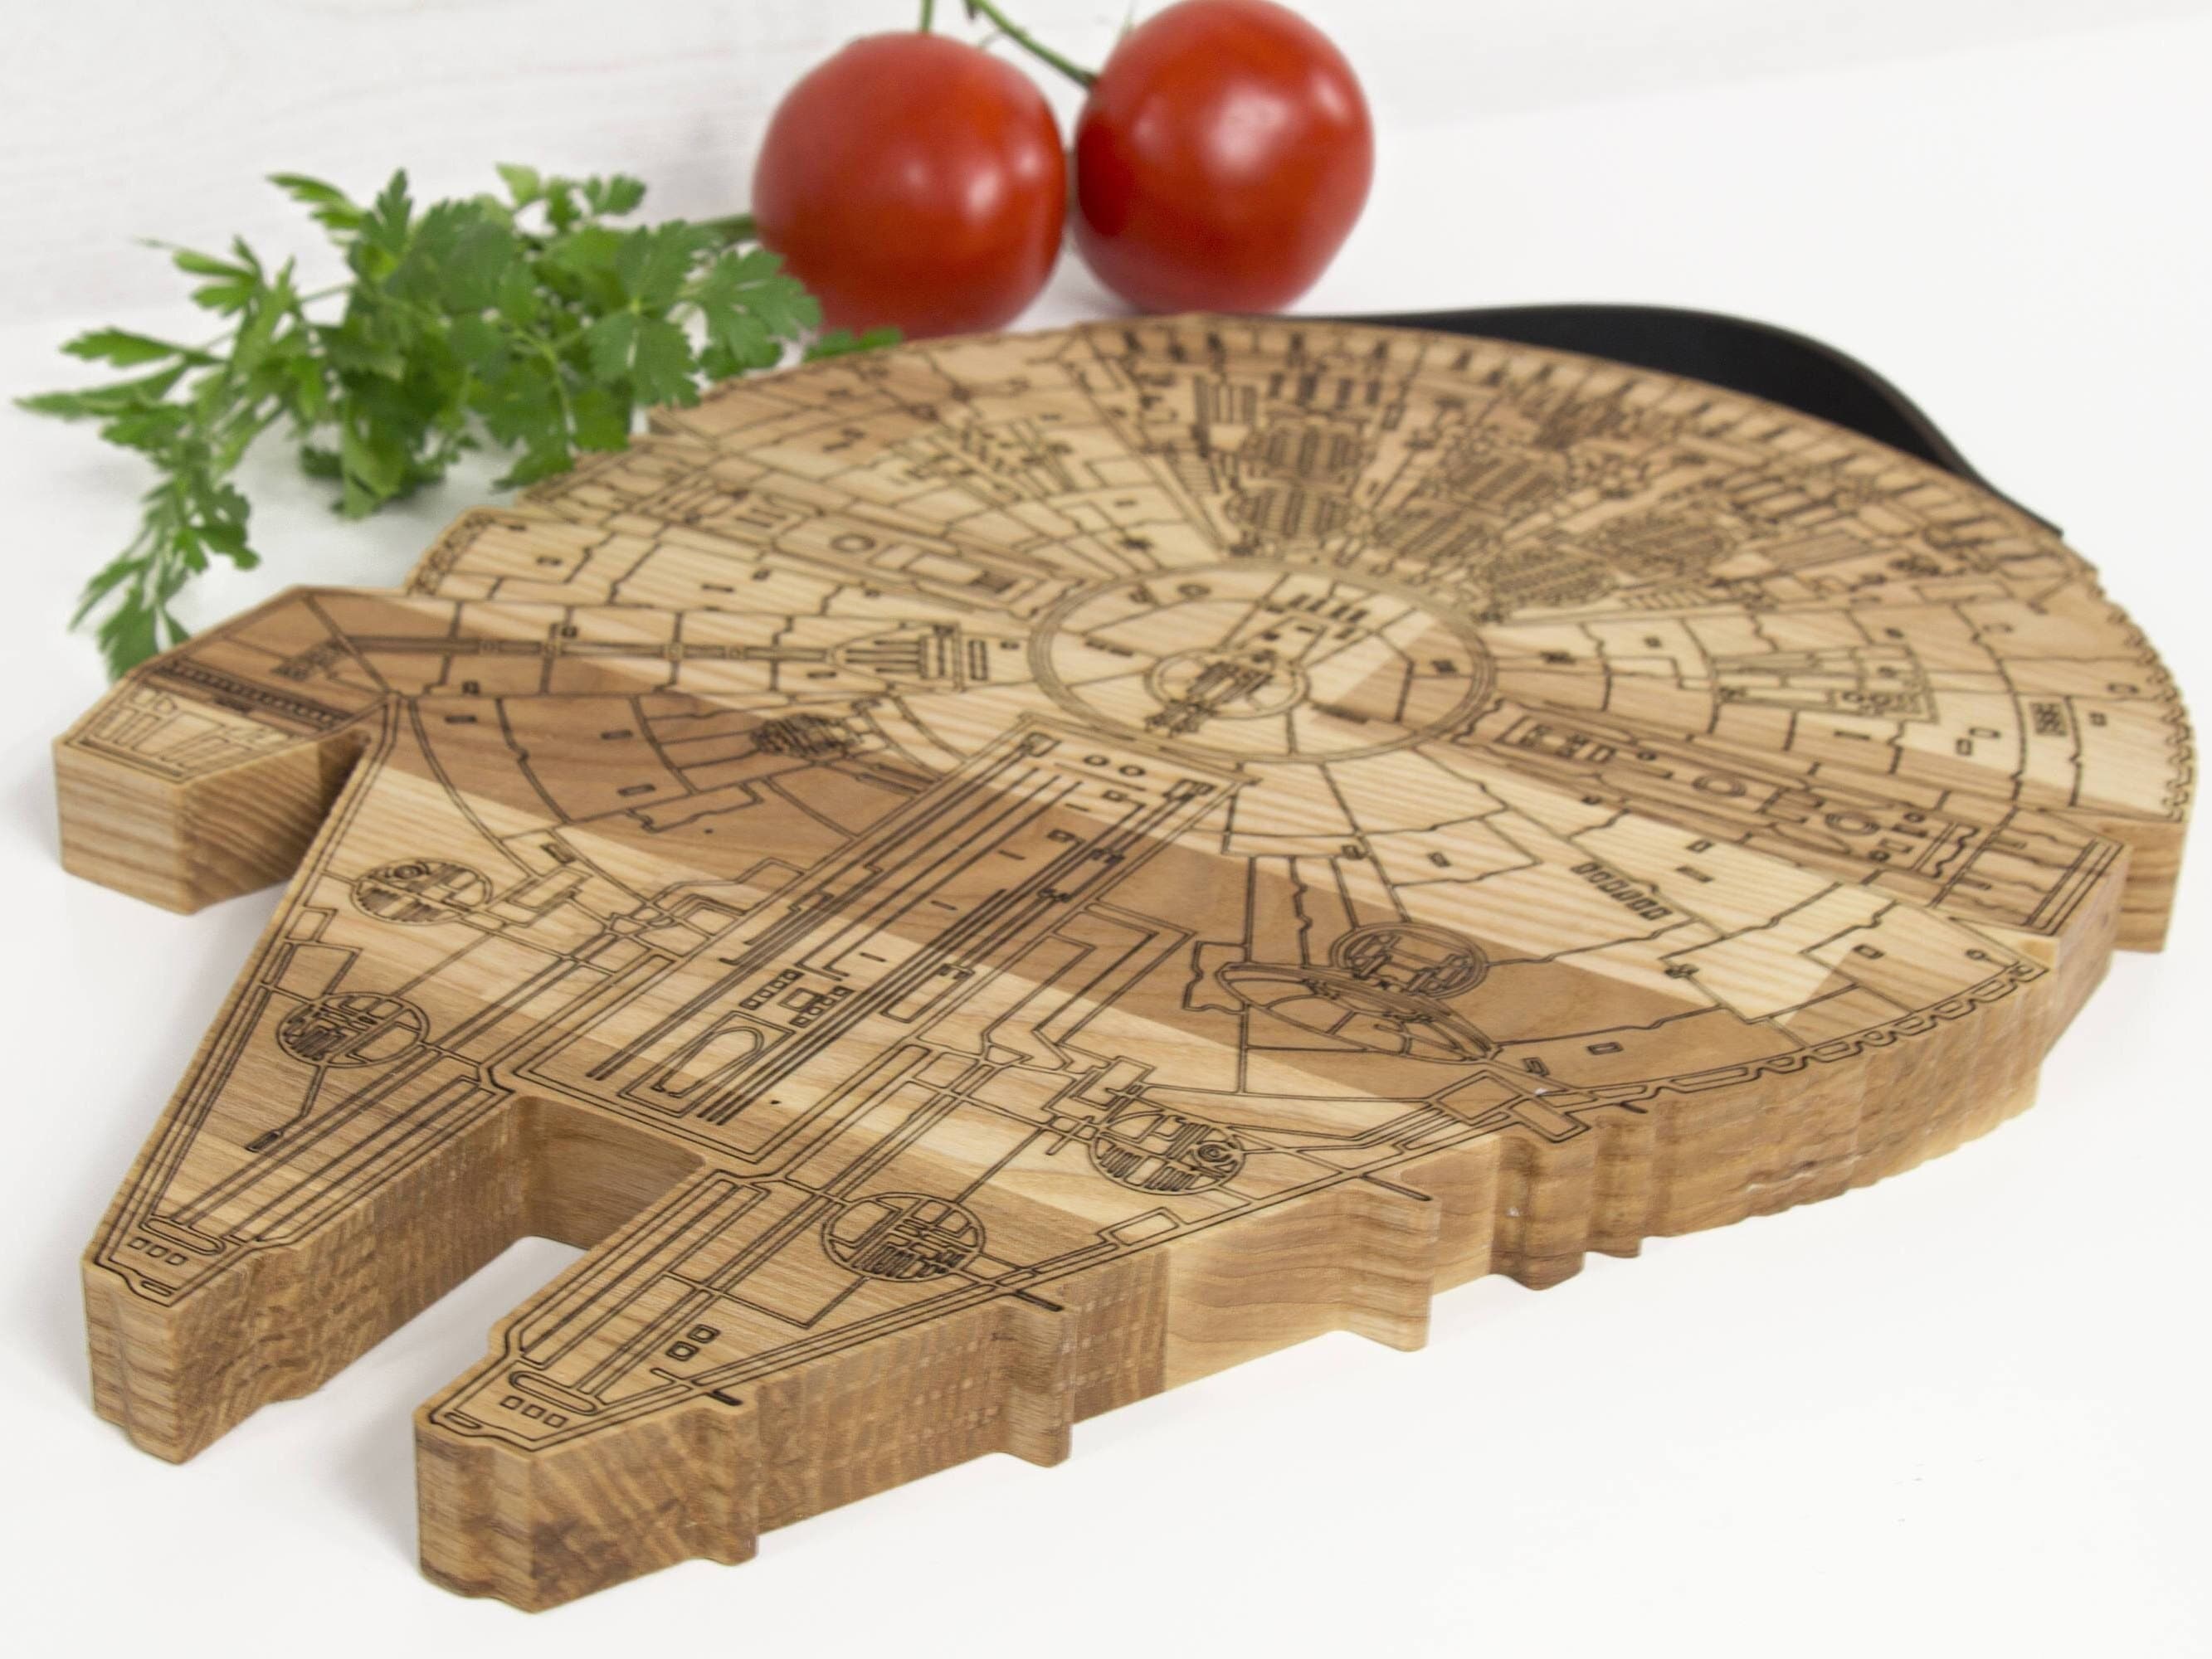 Wooden Millennium Falcon Cutting Board